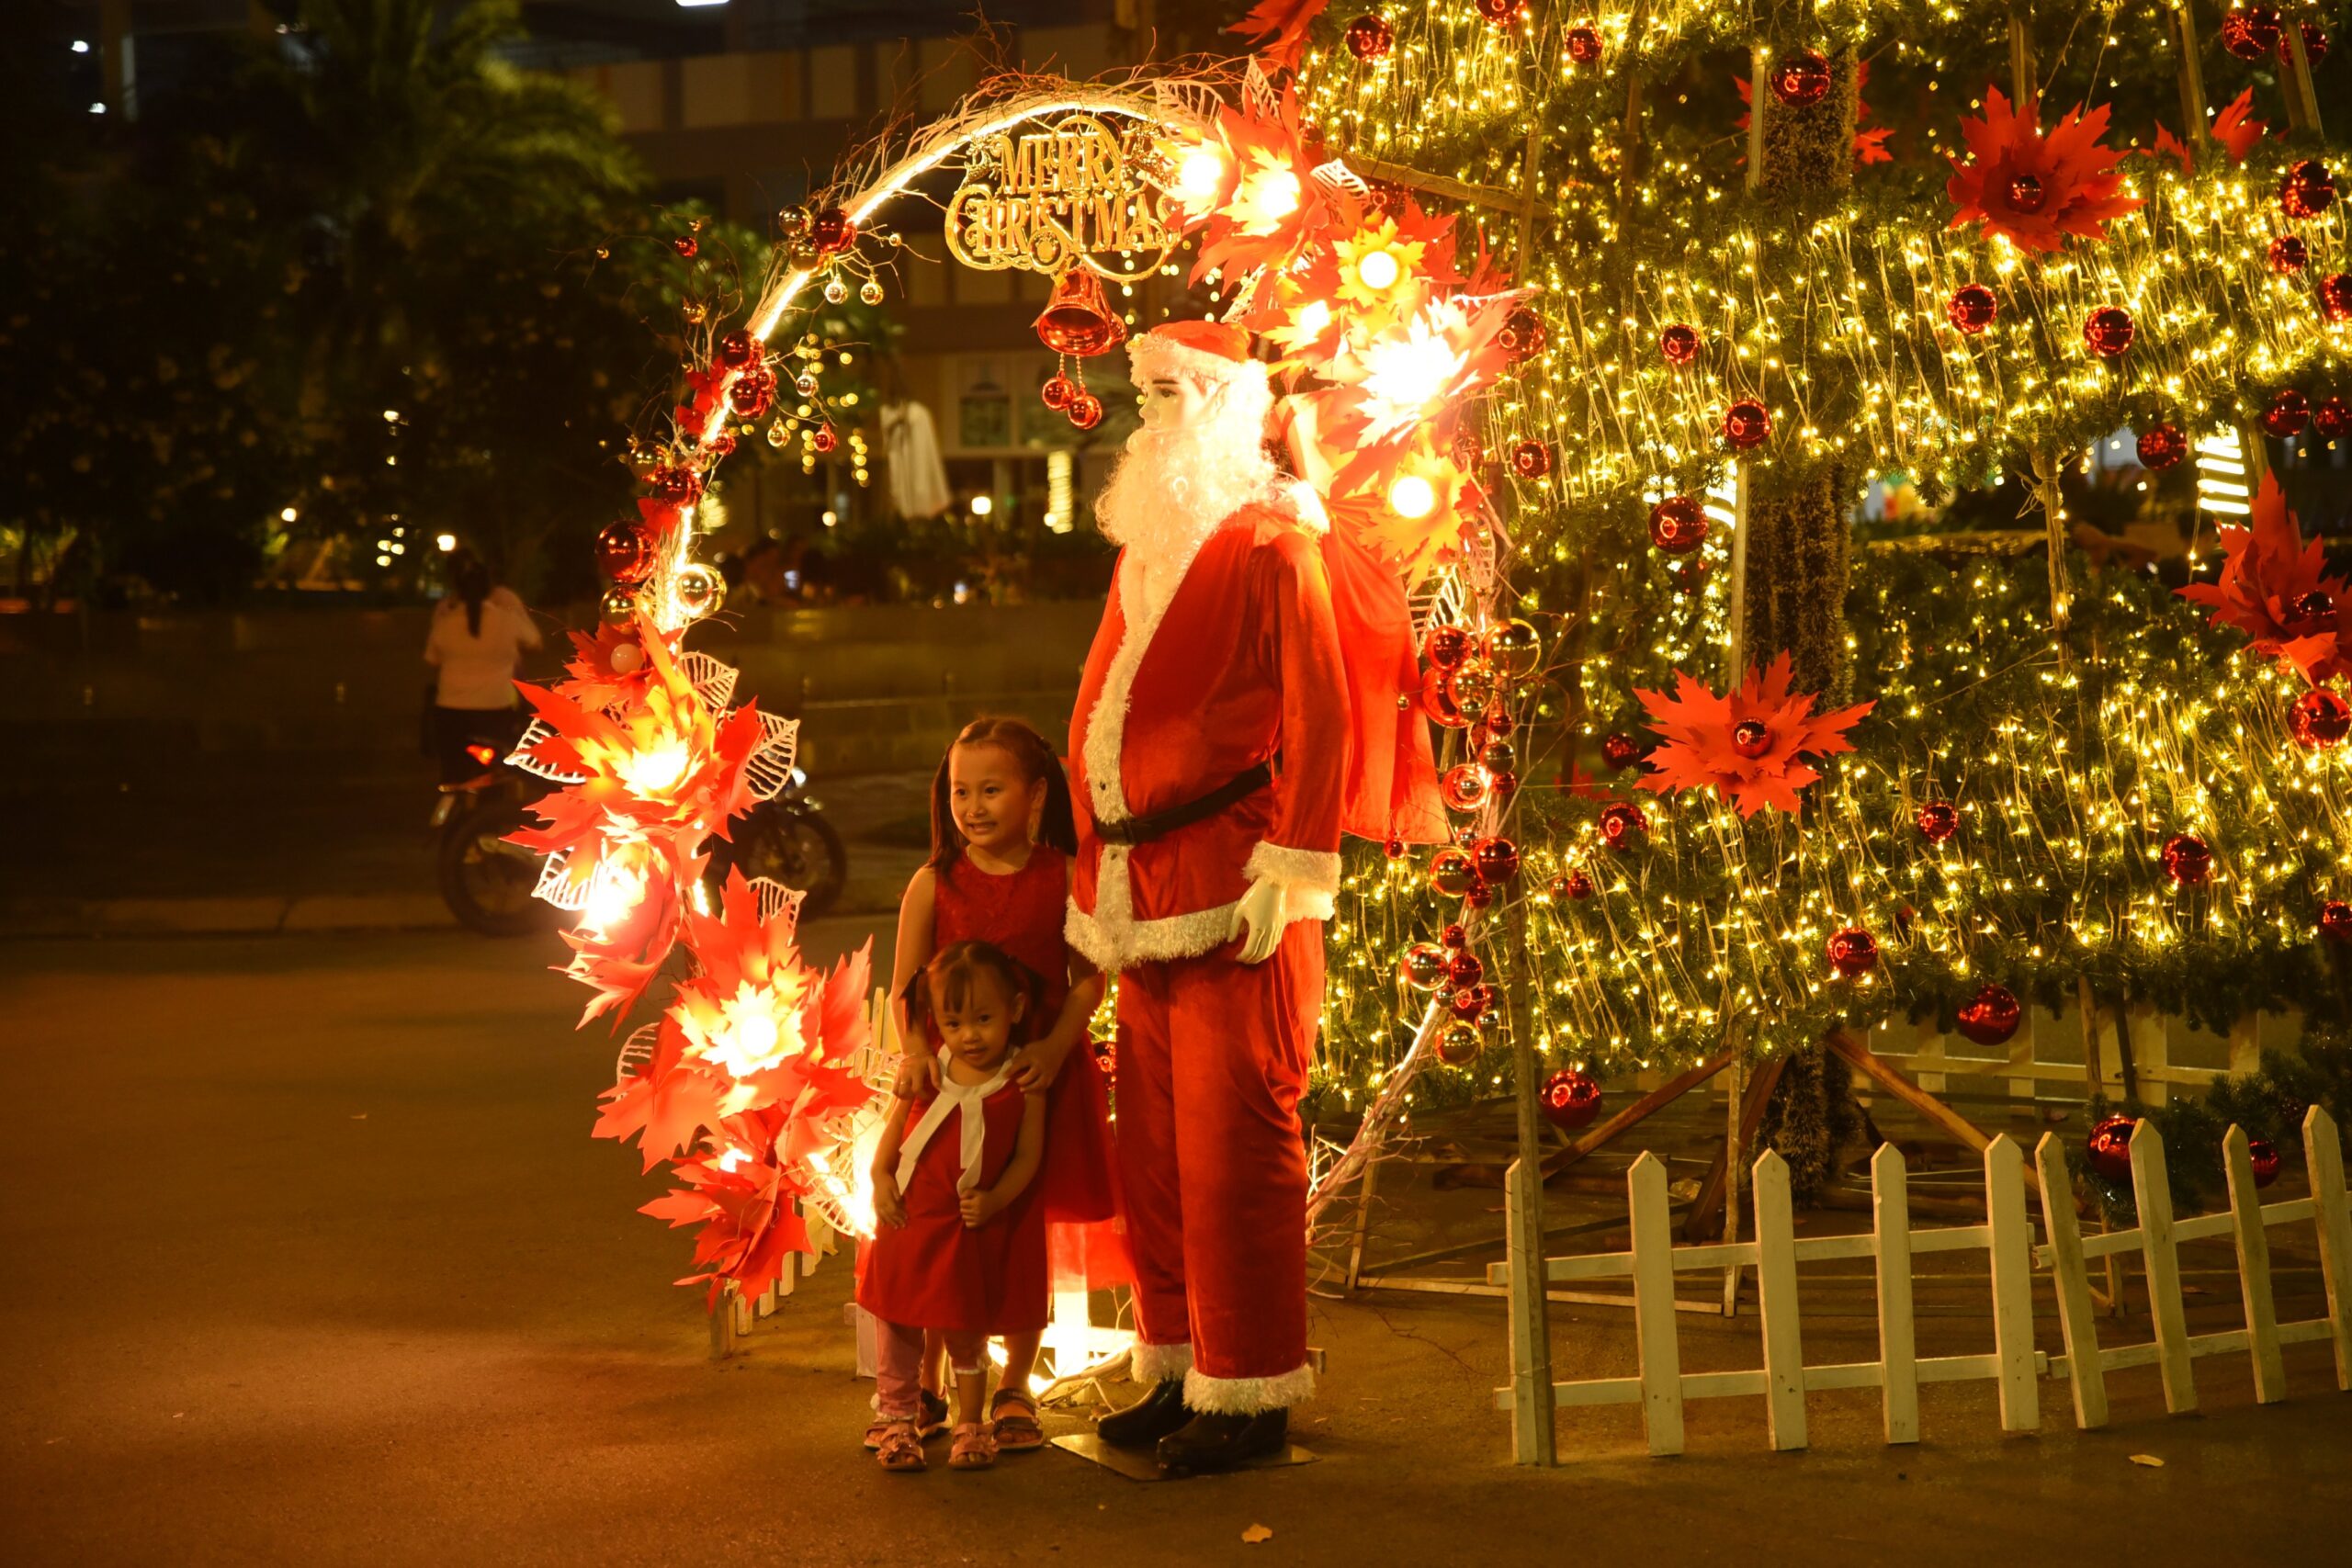 Đêm đến, KDC Phú Đông bừng sáng bởi sắc đèn lung linh. Ông già Noel khổng lồ là nhân vật được các cư dân nhí yêu thích và chụp ảnh cùng.